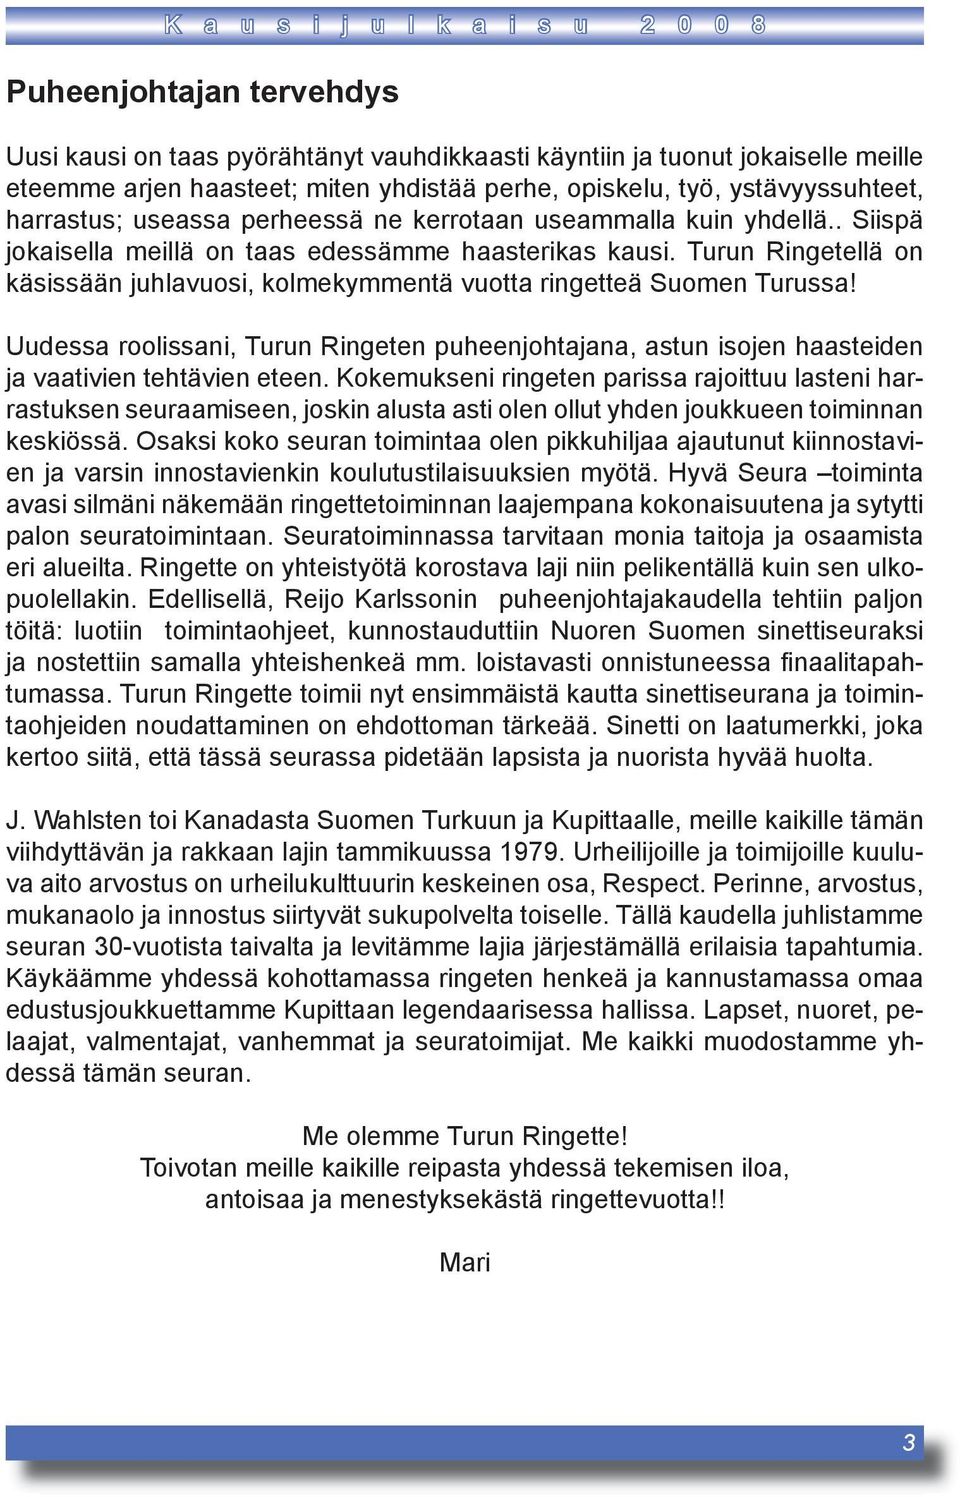 Turun Ringetellä on käsissään juhlavuosi, kolmekymmentä vuotta ringetteä Suomen Turussa! Uudessa roolissani, Turun Ringeten puheenjohtajana, astun isojen haasteiden ja vaativien tehtävien eteen.